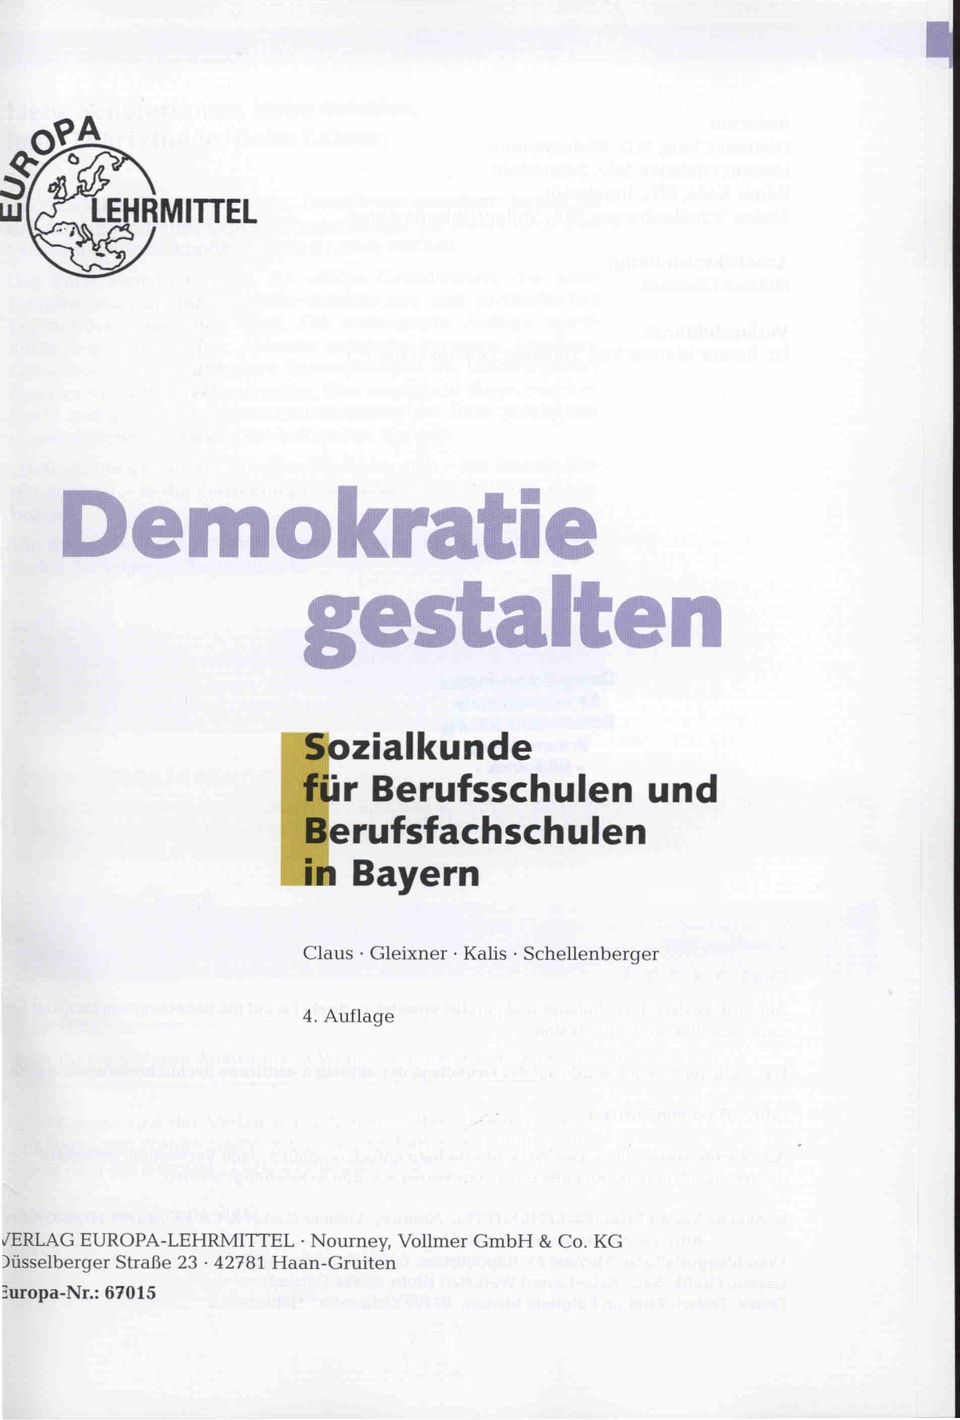 Schellenberger 4. Auflage VERLAGEUROPA-LEHRMITTEL.